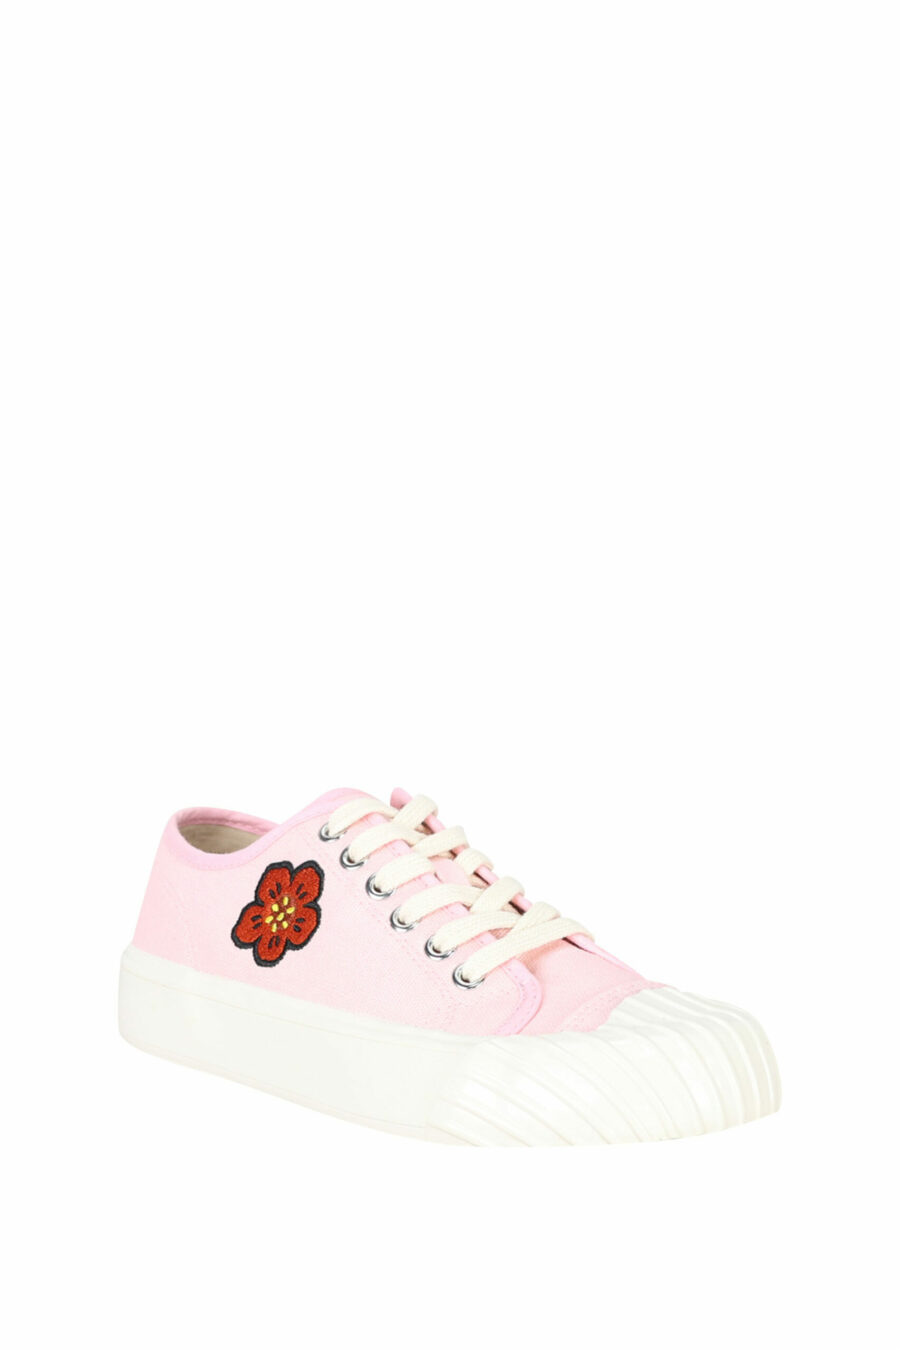 Zapatillas rosa "kenzo school" con logo "boke flower" - 3612230484559 1 scaled